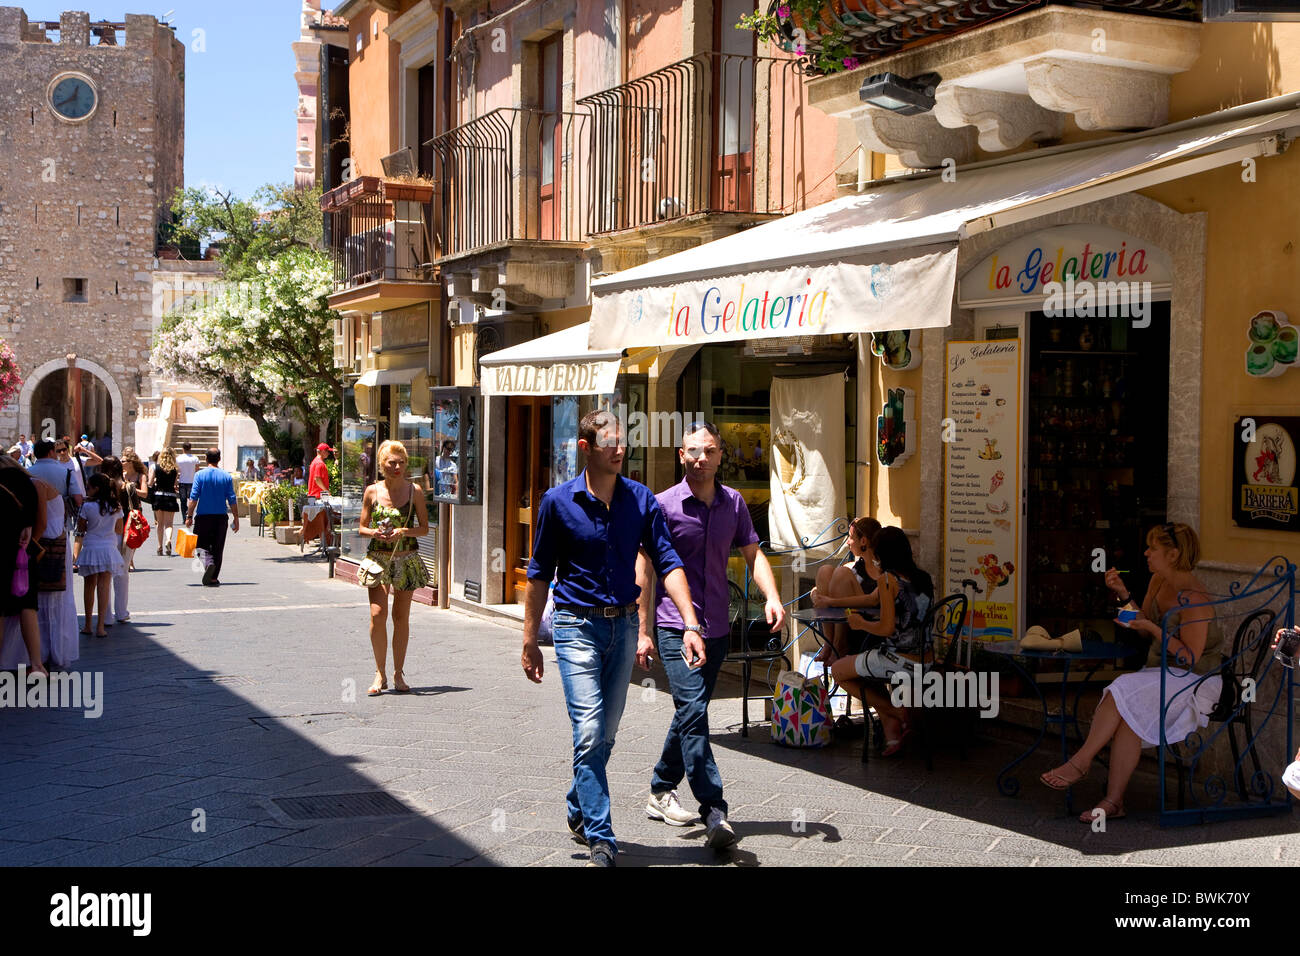 Main street, Corso Umberto, shopping mile, Taormina, province of Messina, Sicily, Italy, Europe Stock Photo